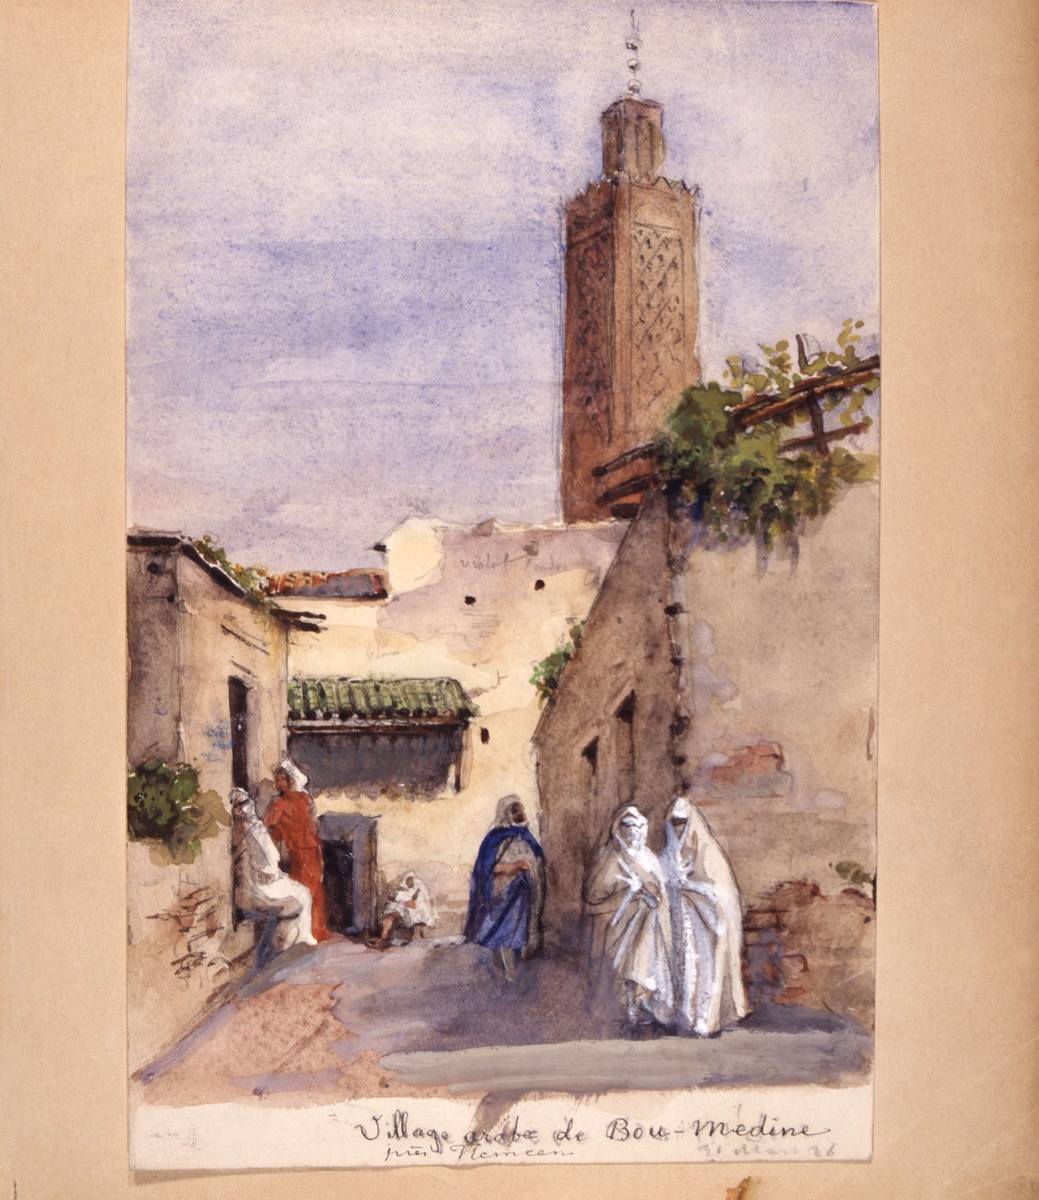 "Village arabe de Bou-Médine". Tlemcen, Algeriet, 31 mars 1886. Akvarell av Fritz von Dardel.